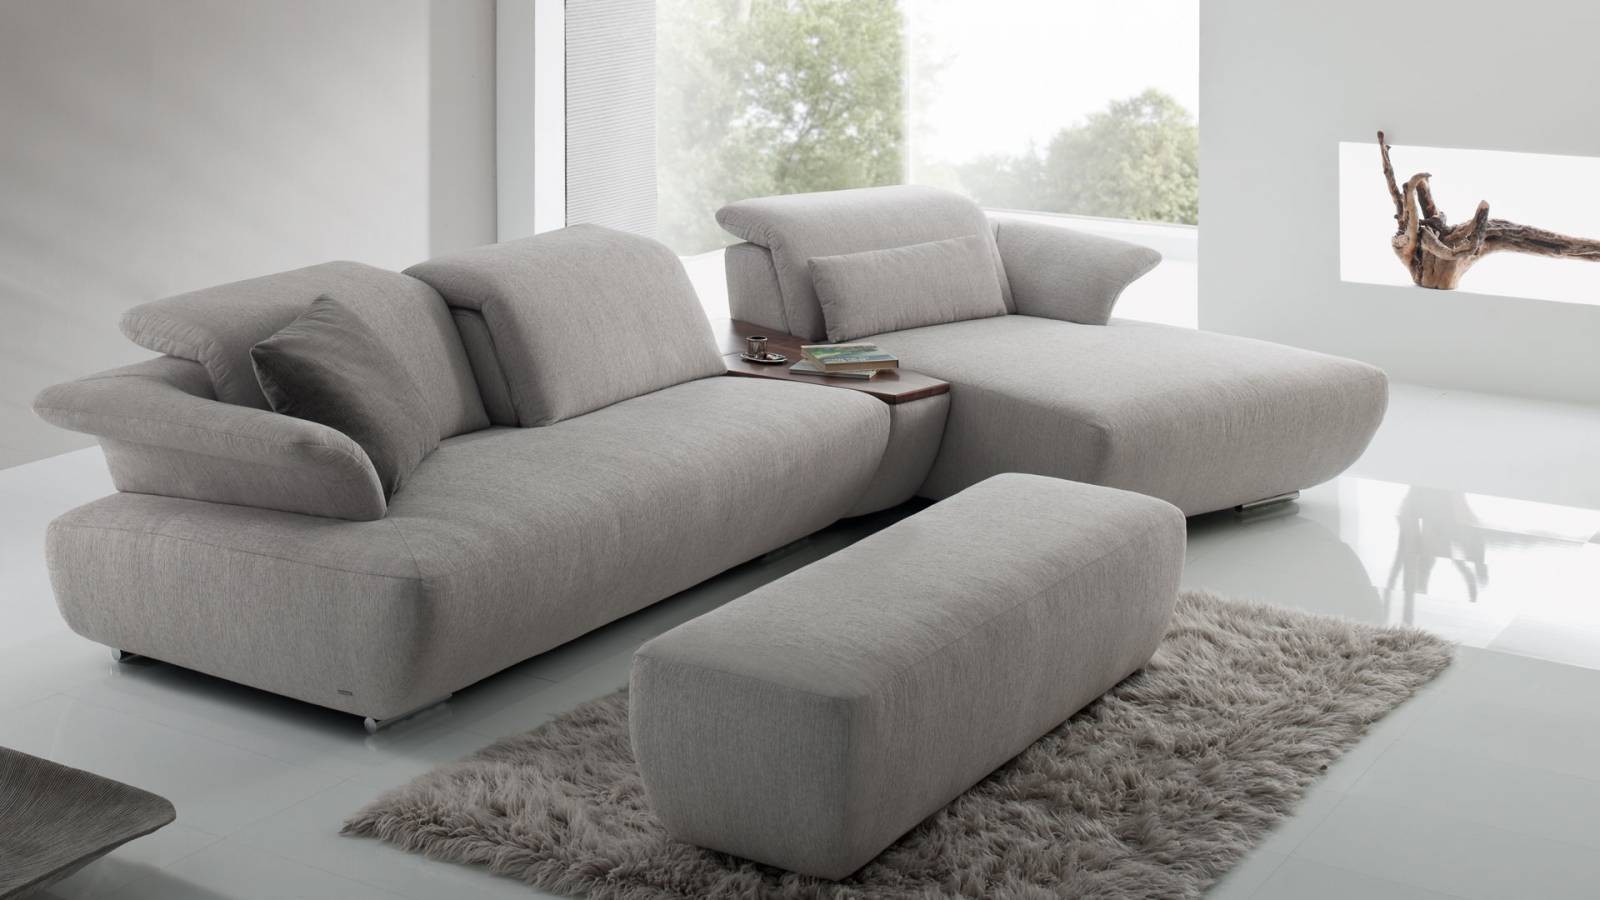 Canapea modernă Koinor Avanti 